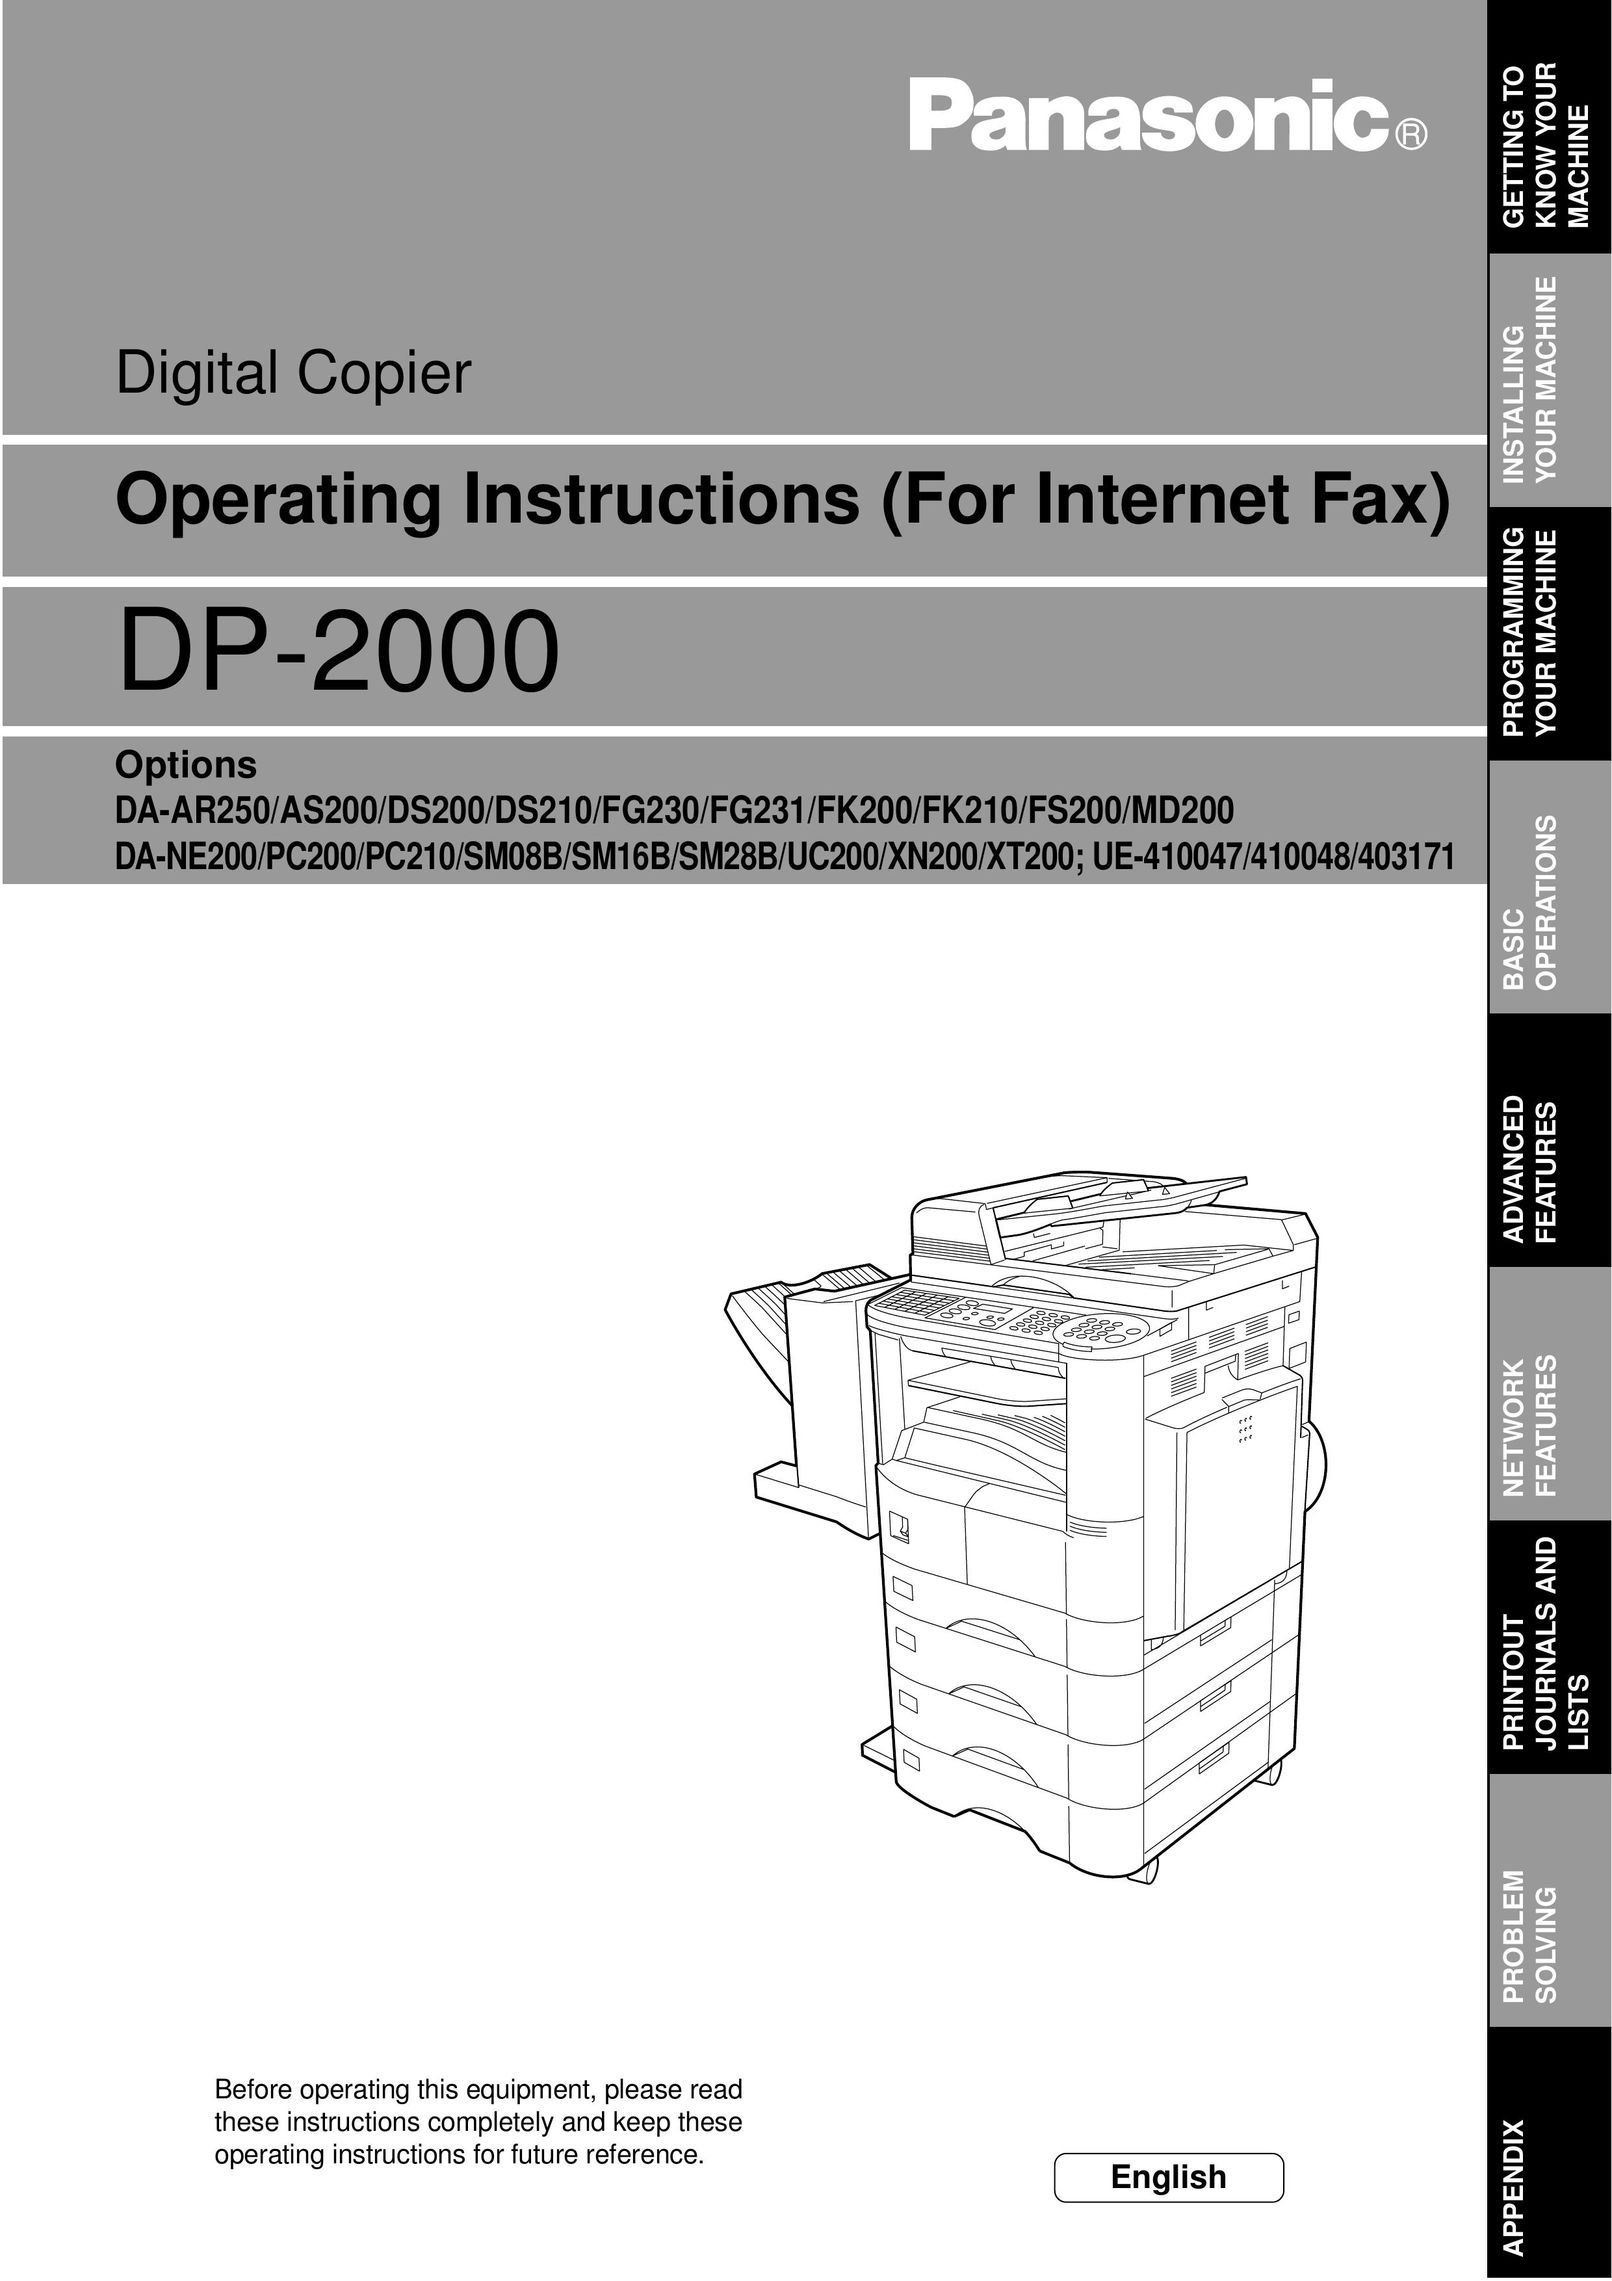 Panasonic DP-2000 All in One Printer User Manual